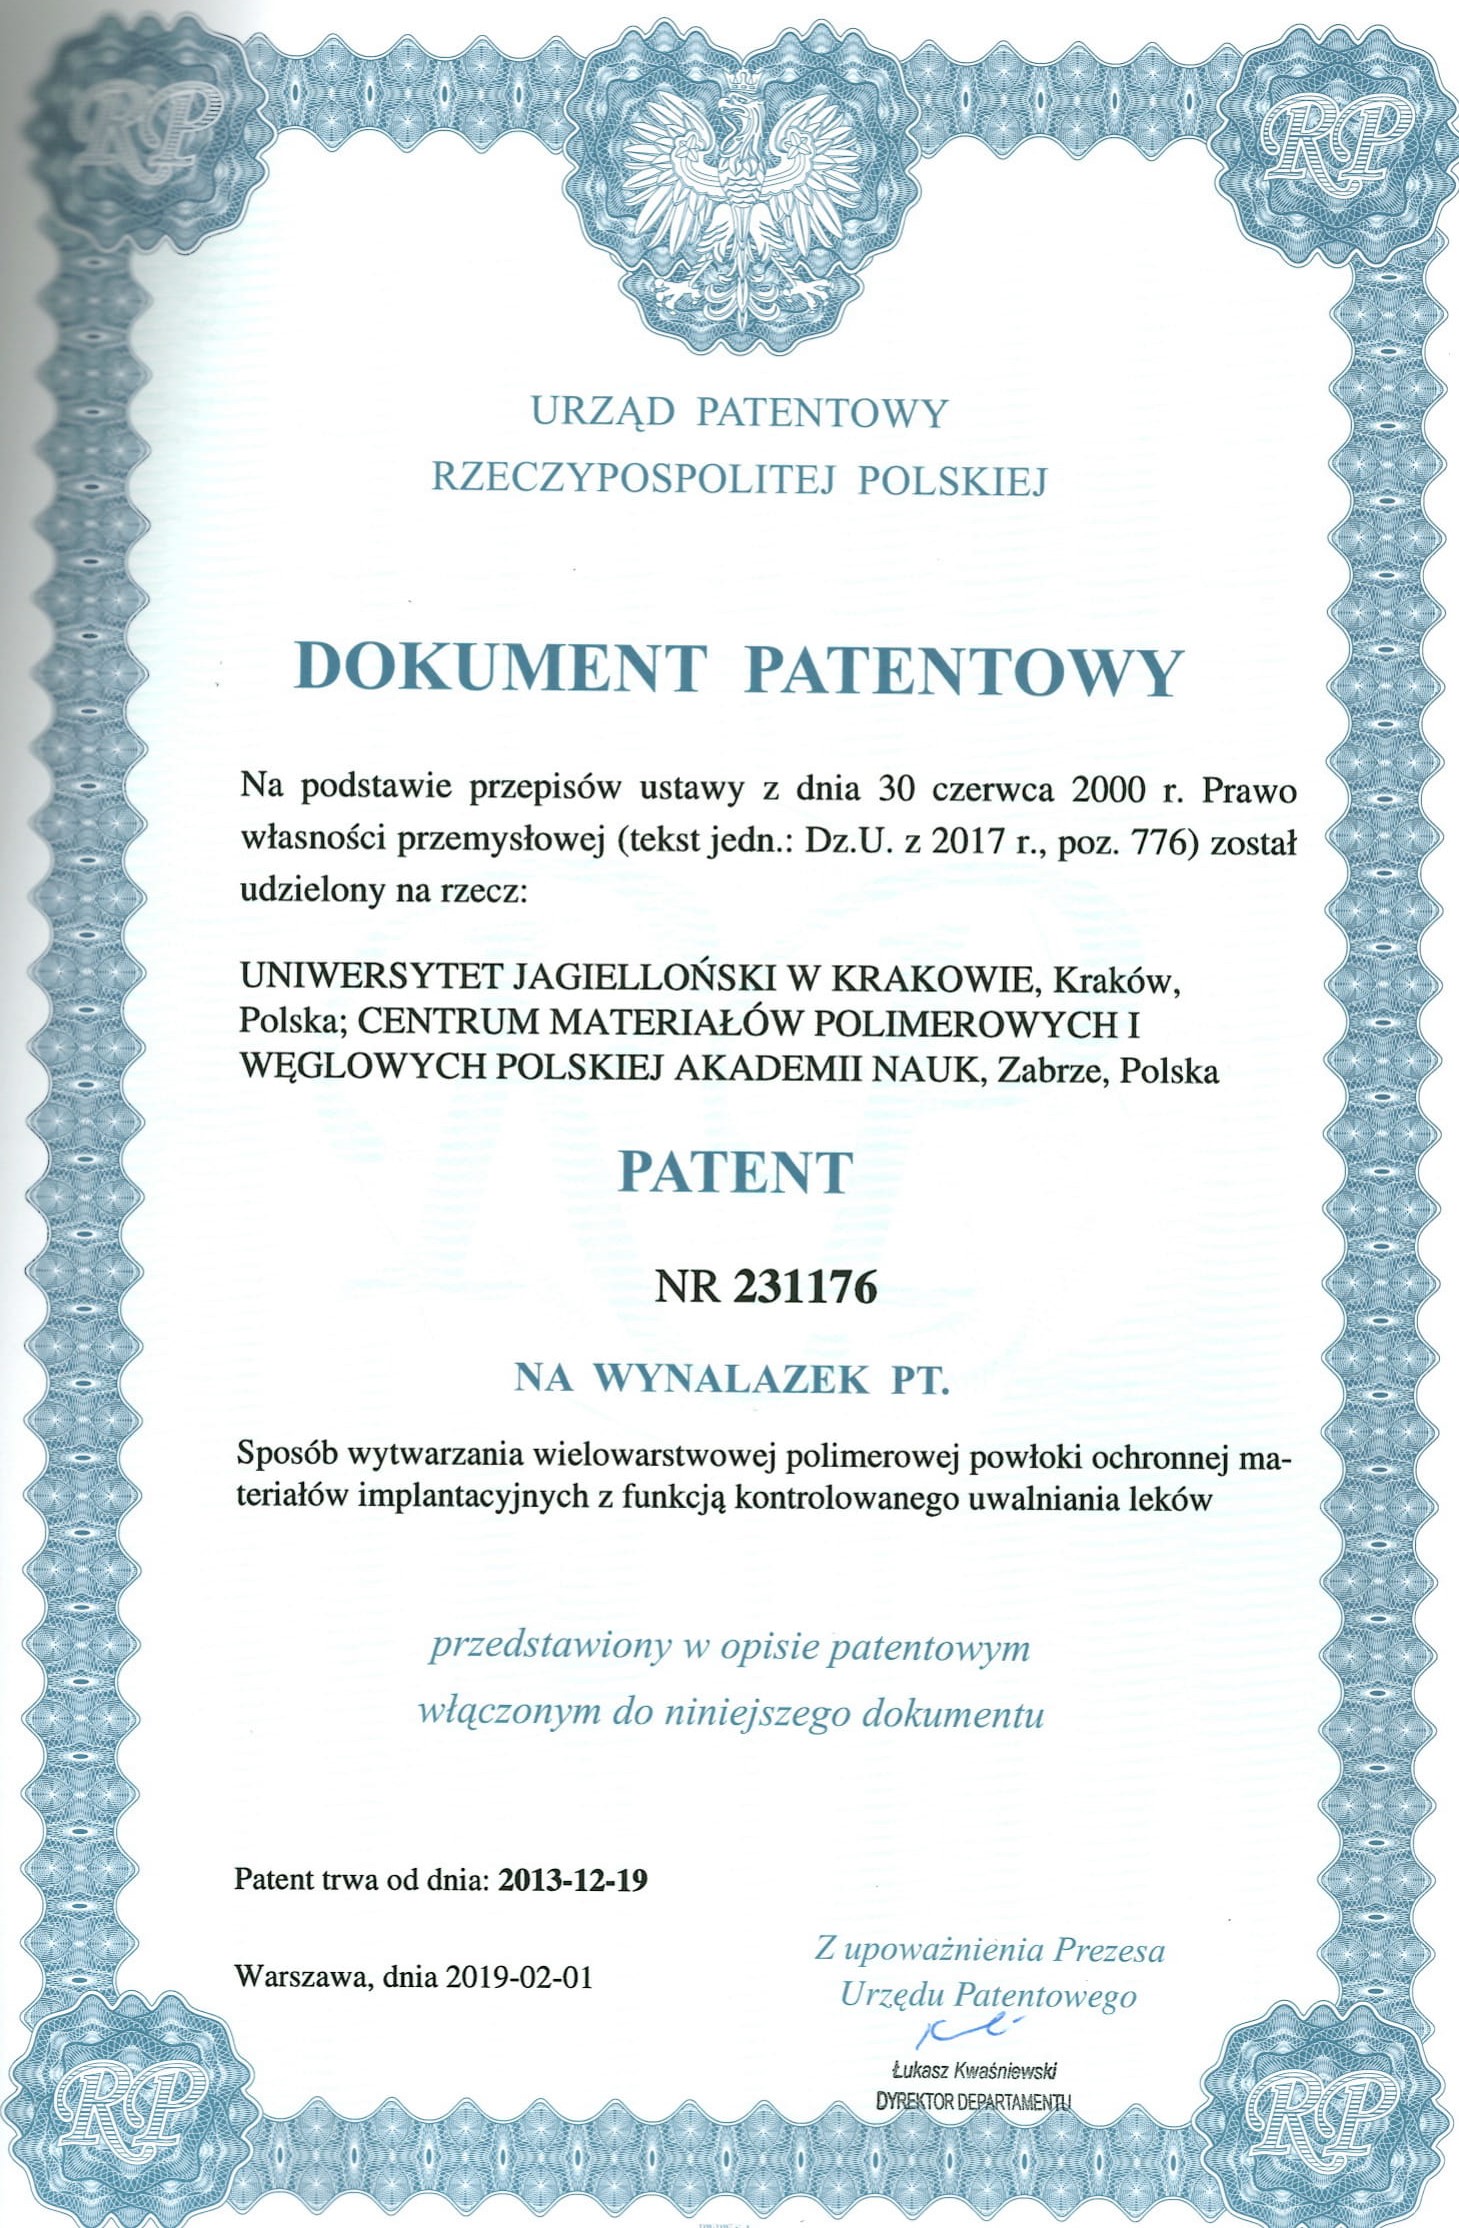 Zdjęcie dokumentu patentowego